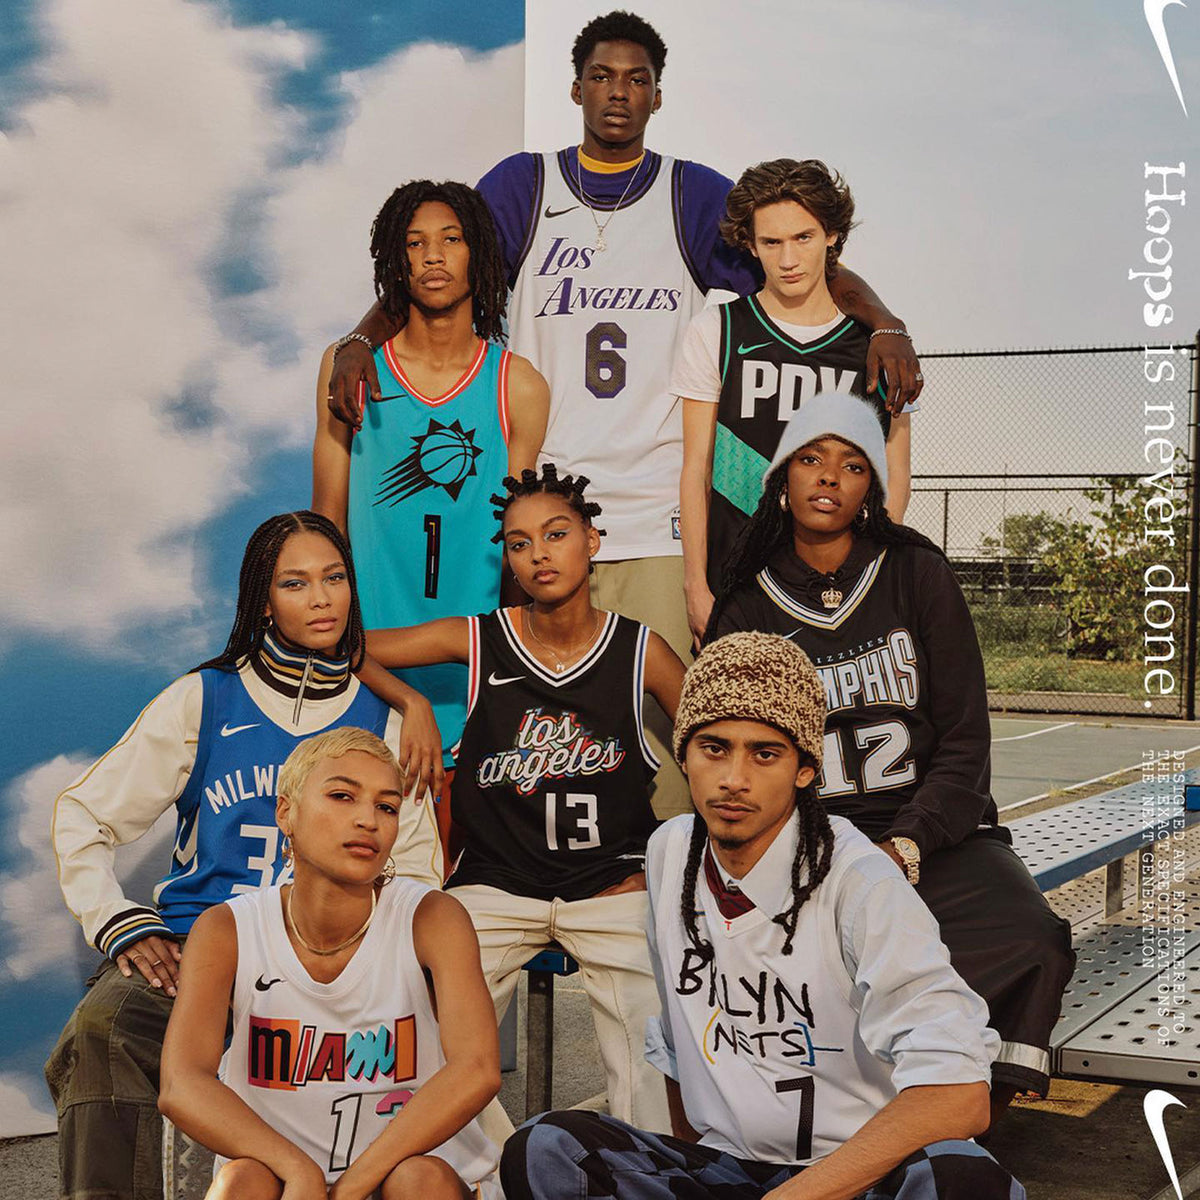 Brooklyn Nets City Edition Nike NBA Swingman Jersey. Nike JP